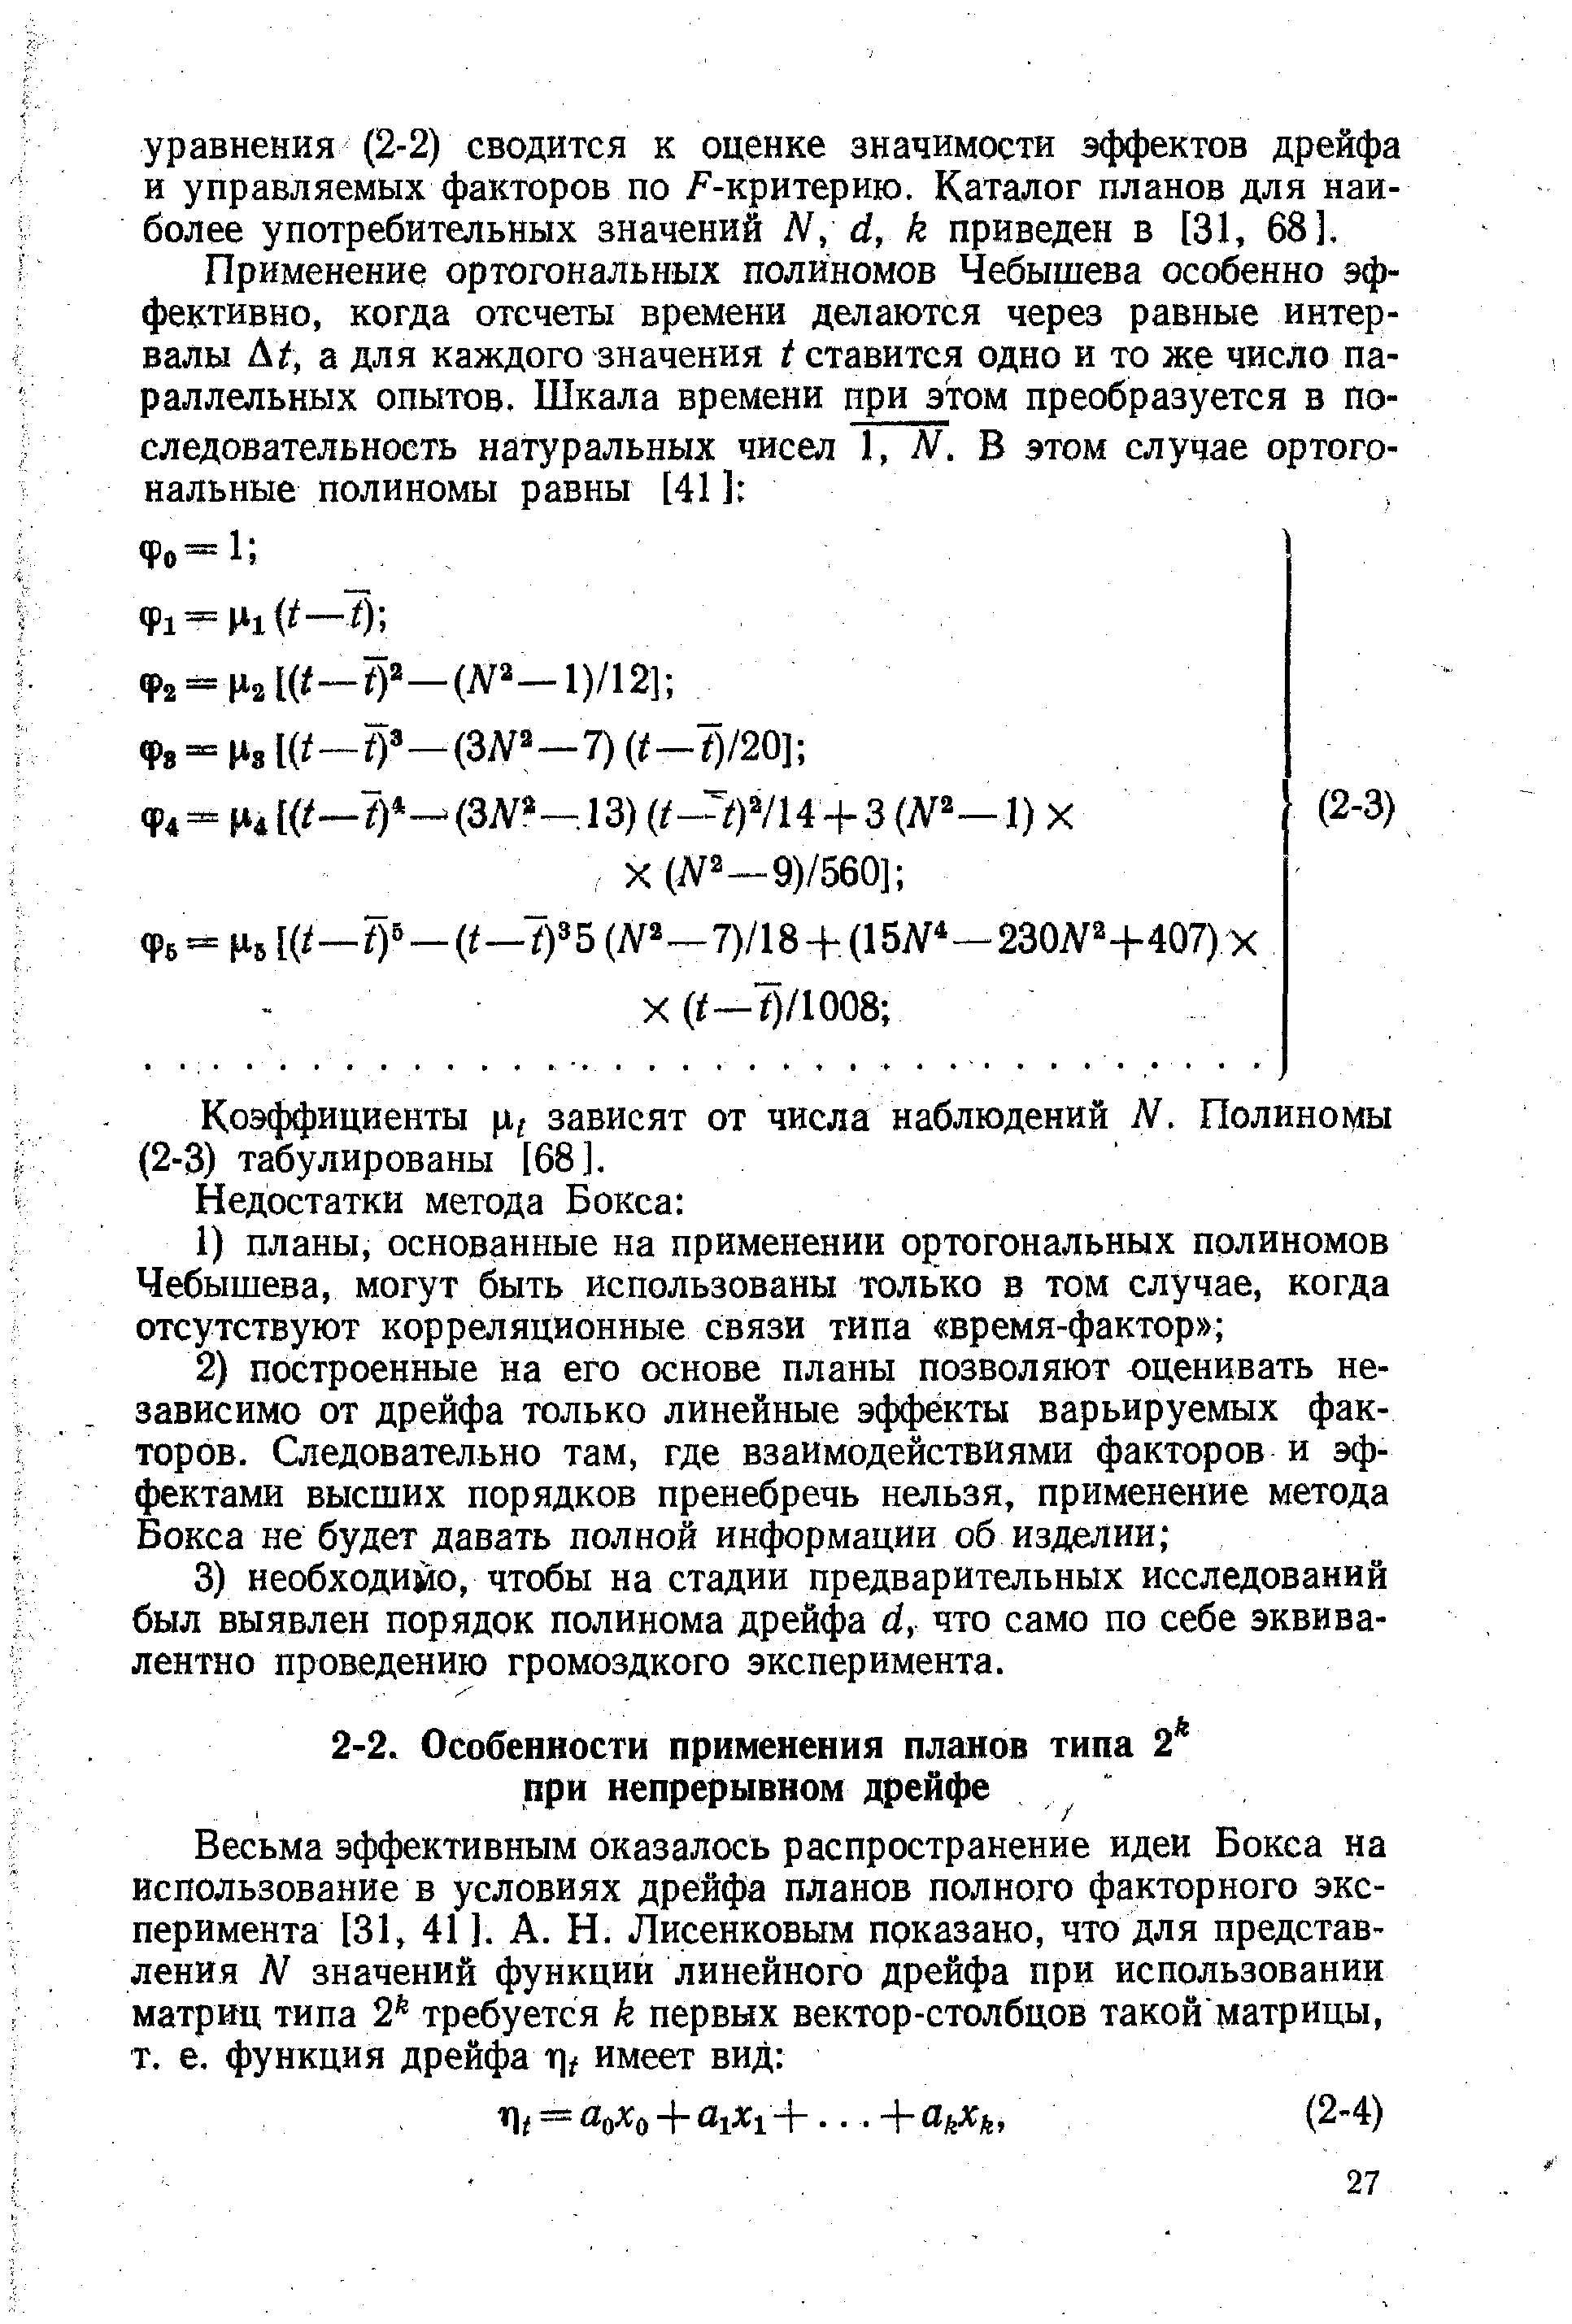 Коэффициенты р,, зависят от числа наблюдений N. Полиномы (2-3) табулированы [68].
